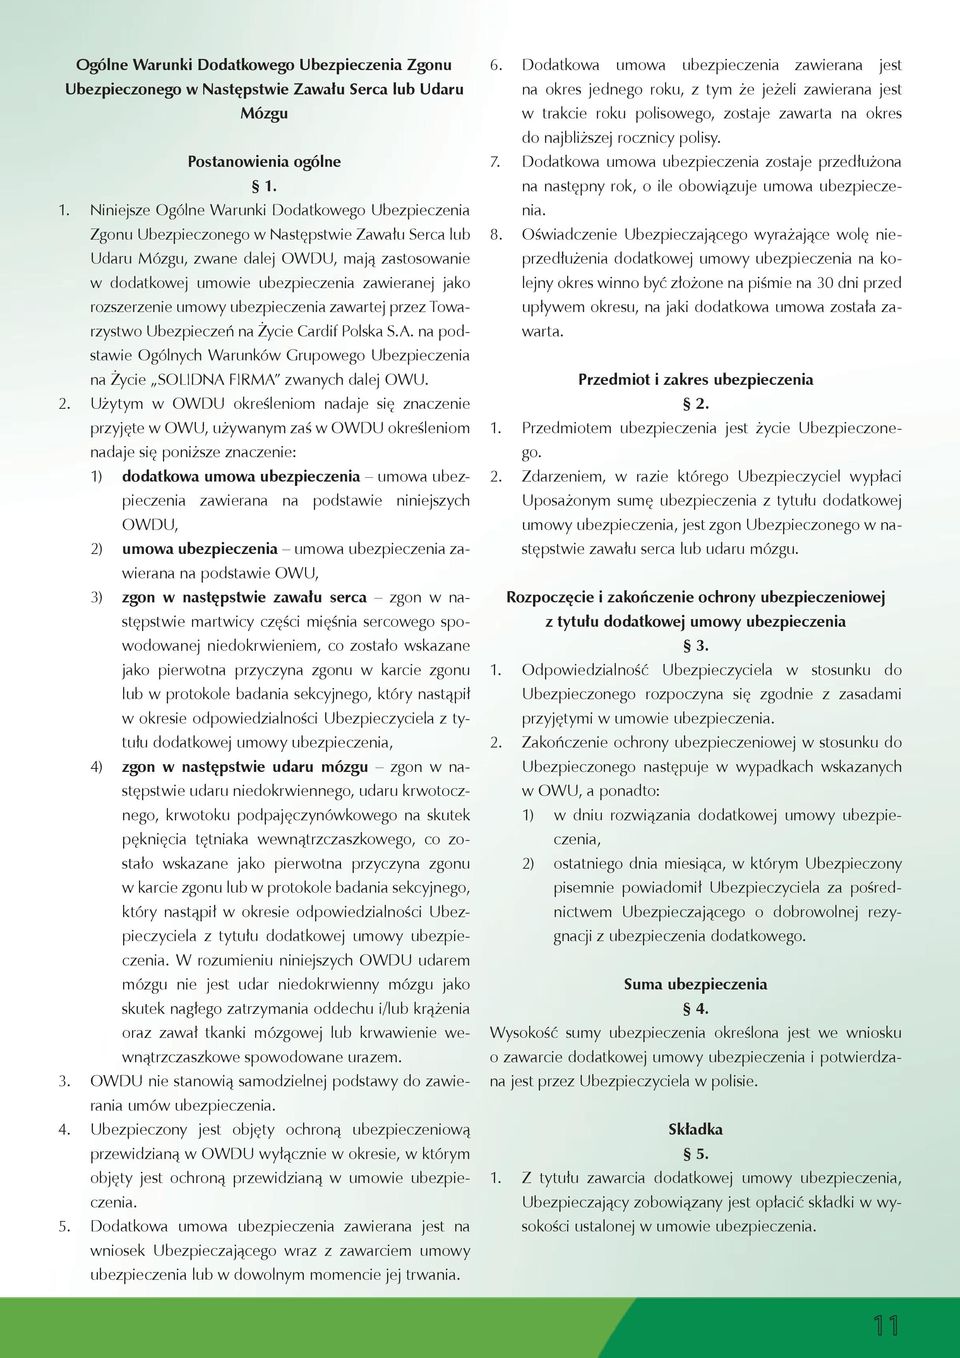 ubezpieczenia zawieranej jako rozszerzenie umowy ubezpieczenia zawartej przez Towarzystwo Ubezpieczeń na Życie Cardif Polska S.A.